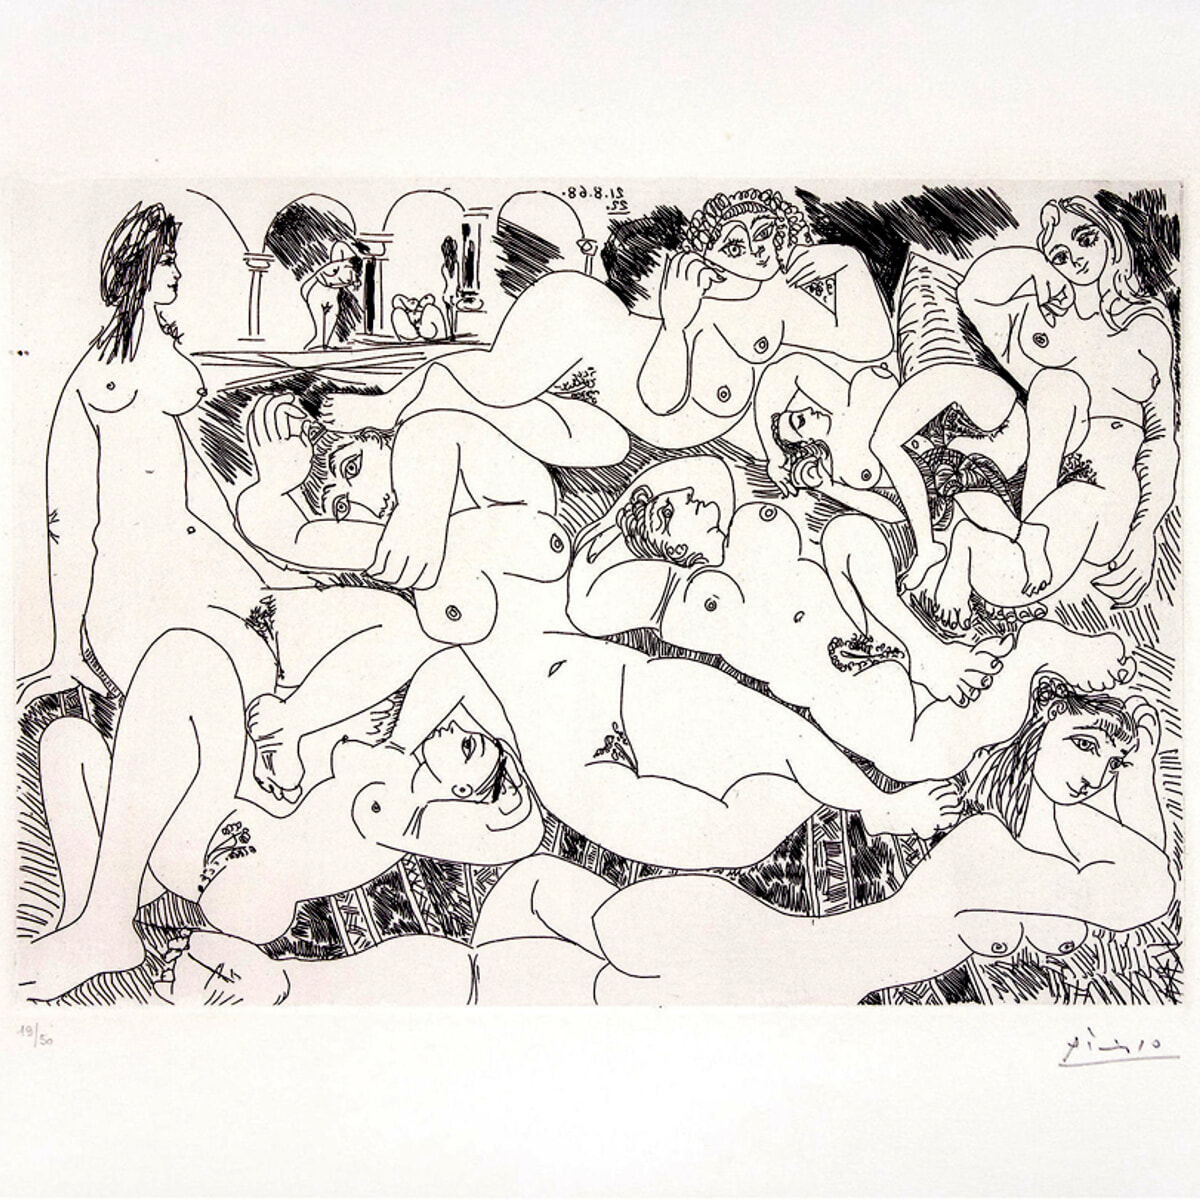 Picasso Erotico, Mostra Provocatoria al Festival delle Culture